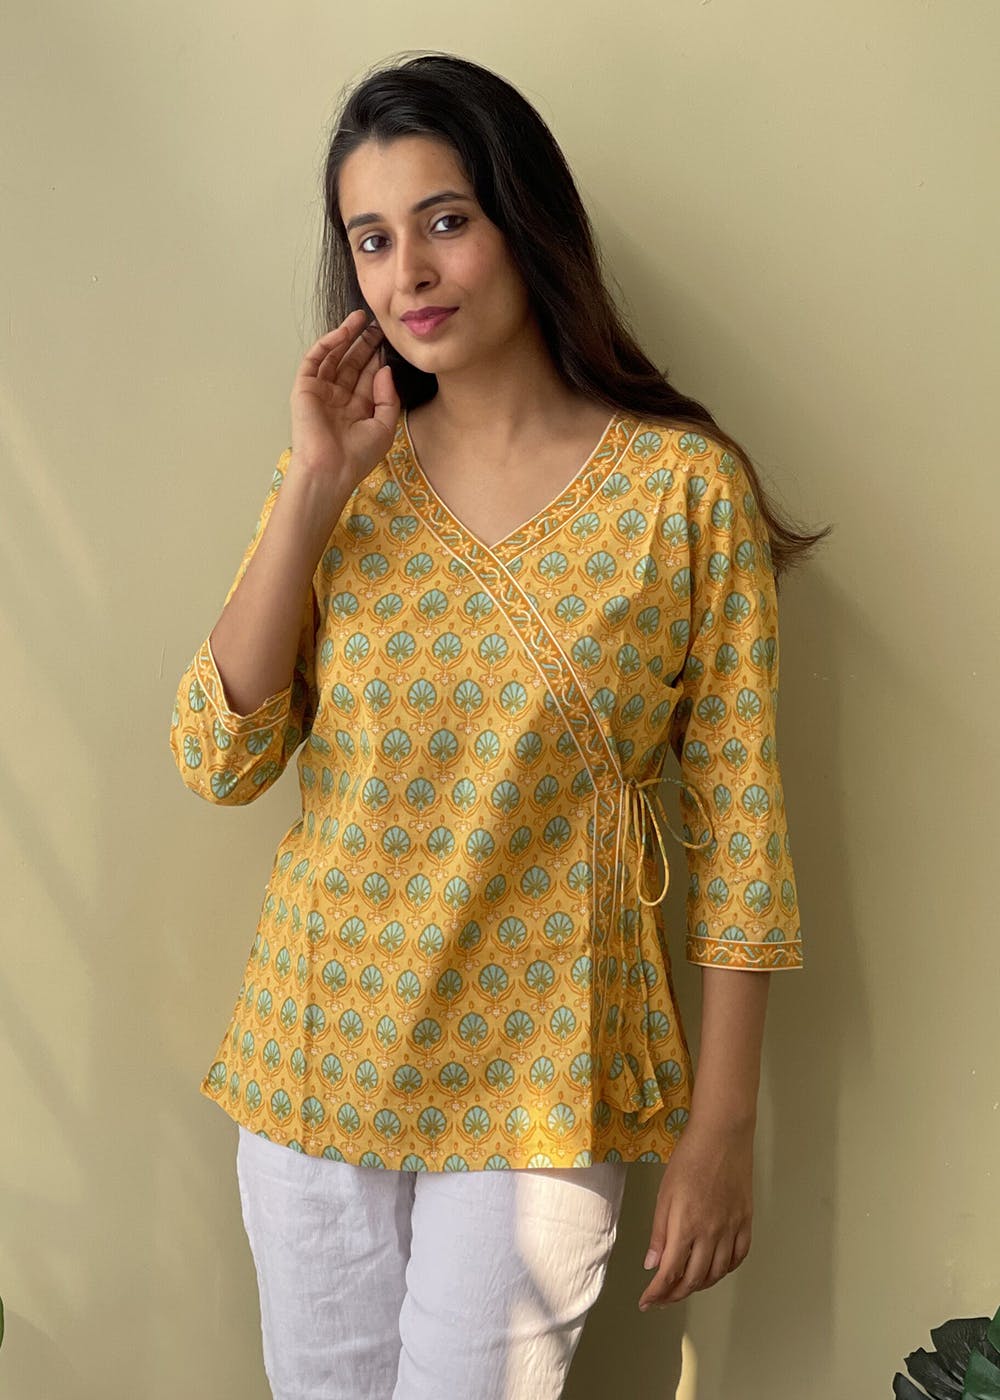 Get Yellow Angrakha Short Top at ₹ 1050 | LBB Shop